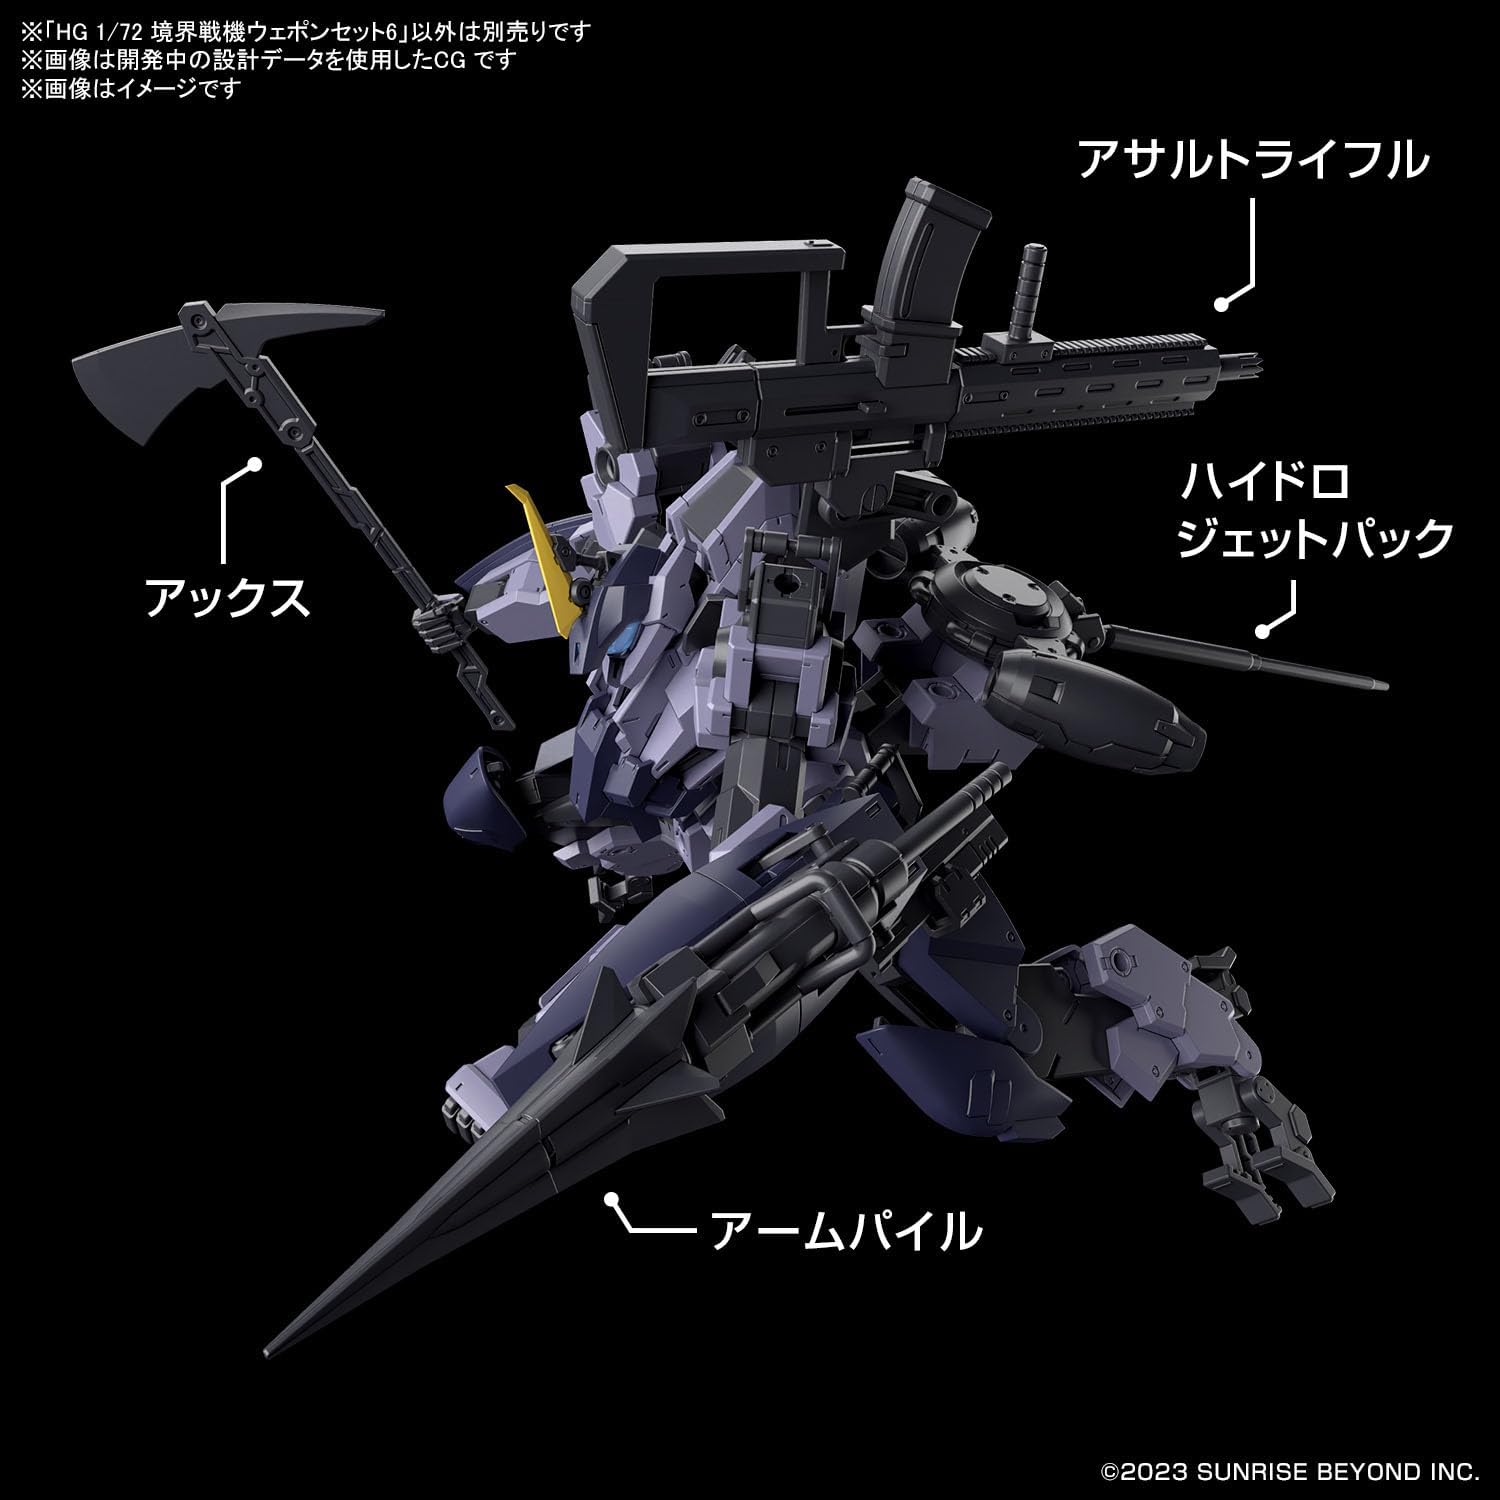 Bandai HG Boundary Fighter Weapon Set 6 1/72 - BanzaiHobby